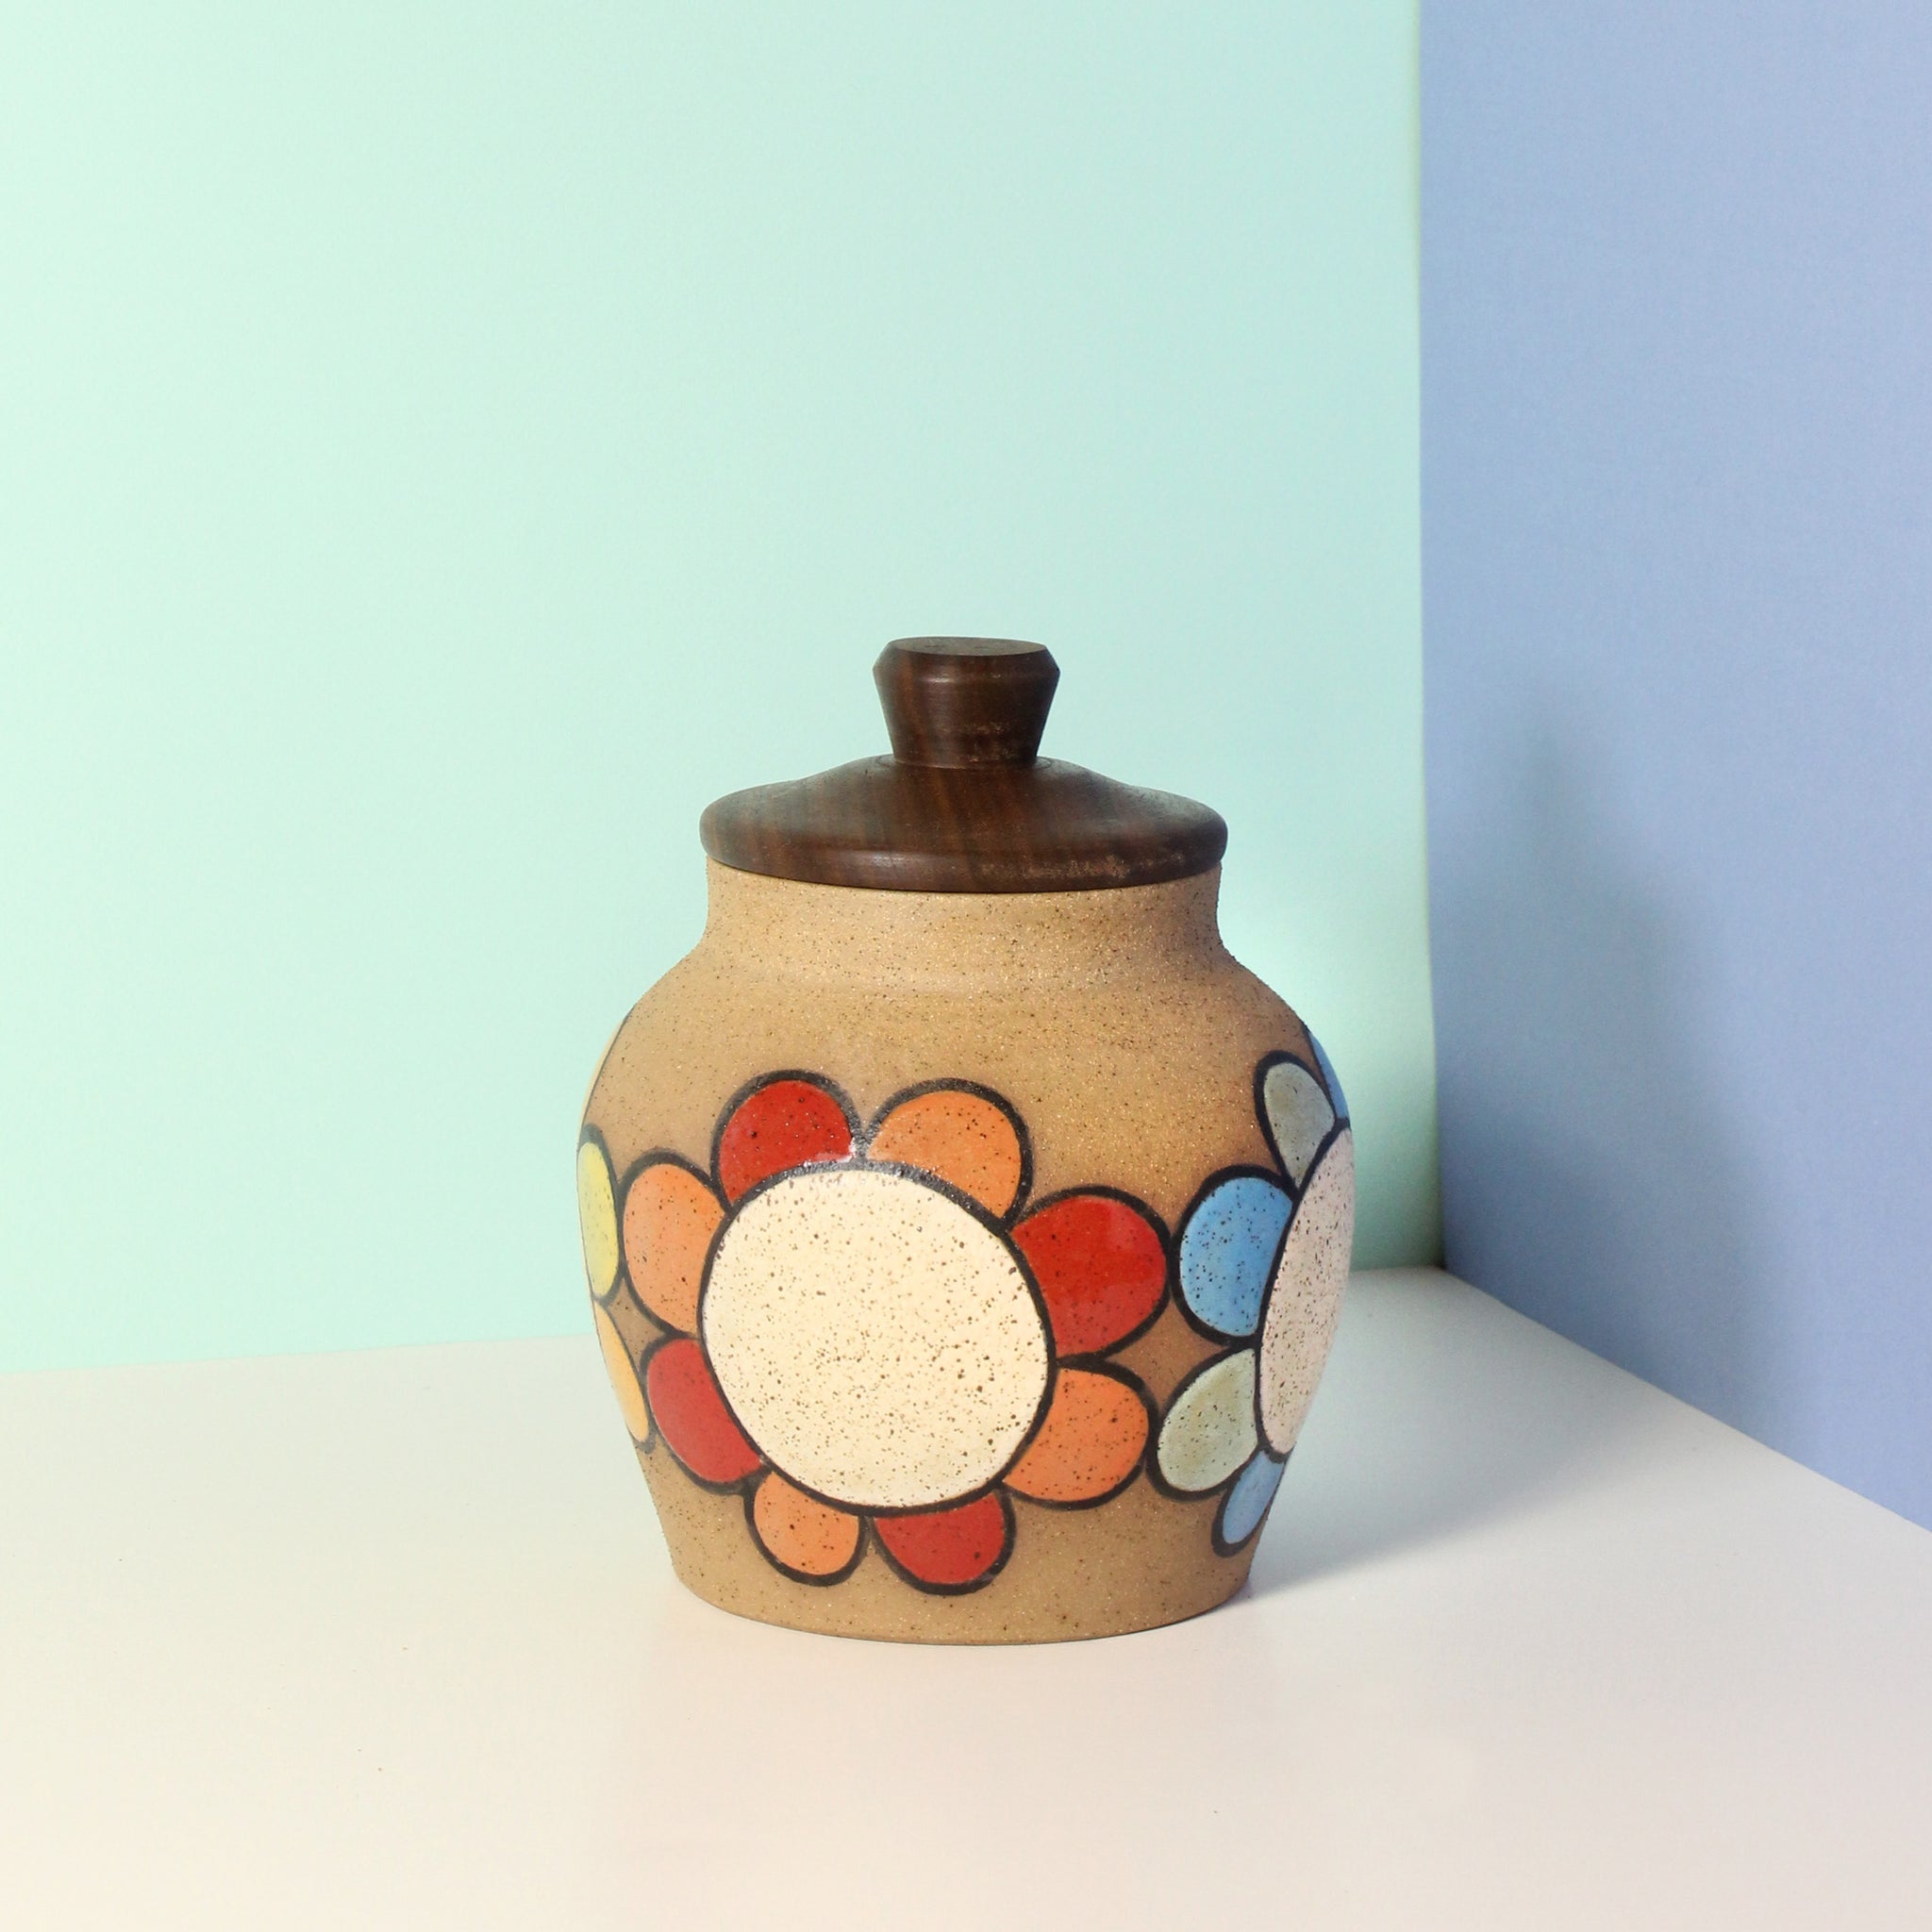 Glazed Stoneware Jar with Flower Pattern